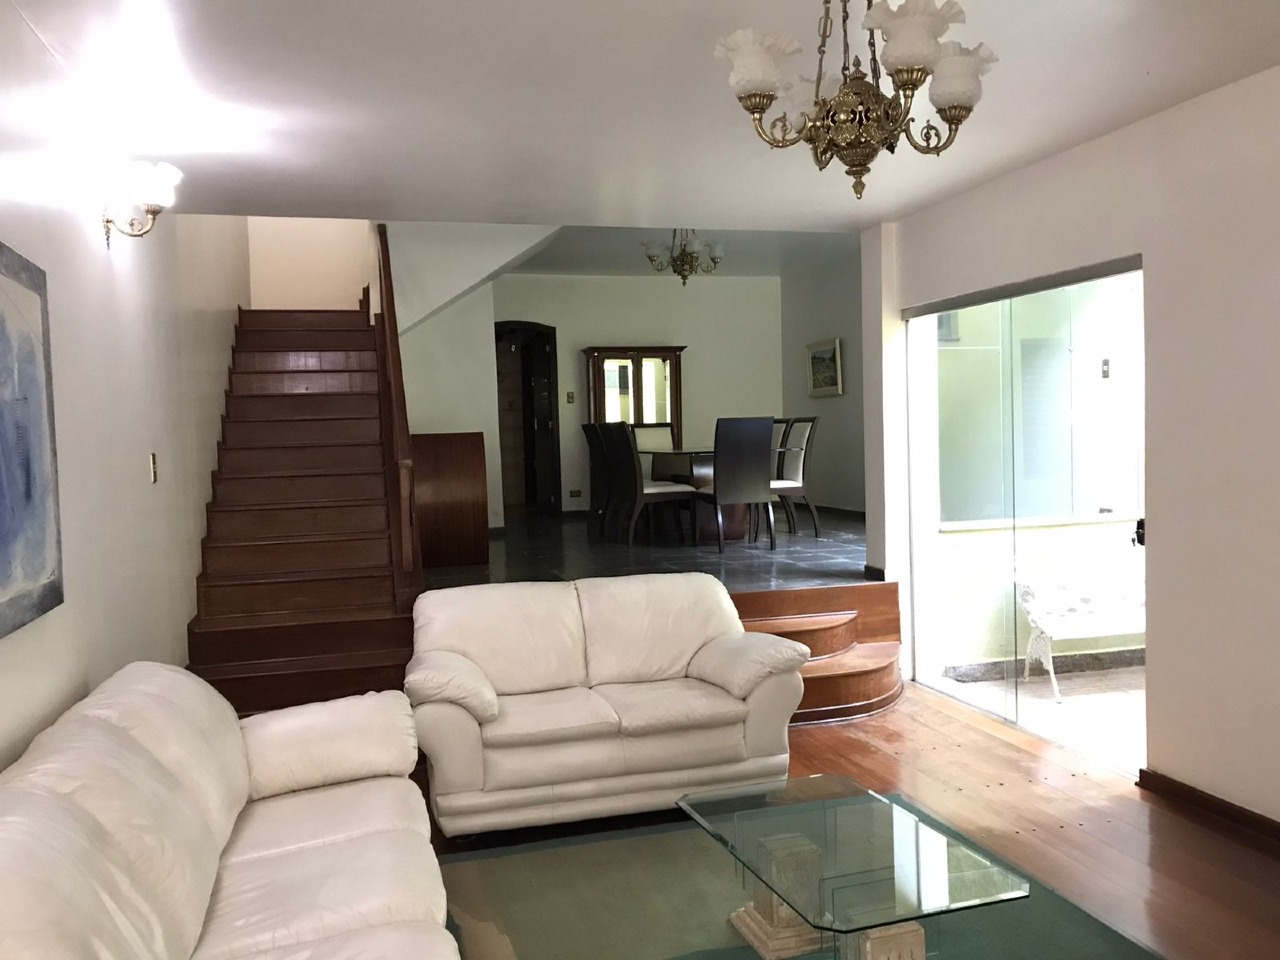 Casa para comprar, 3 quartos, 1 suíte, no bairro Vila Monteiro em Piracicaba - SP